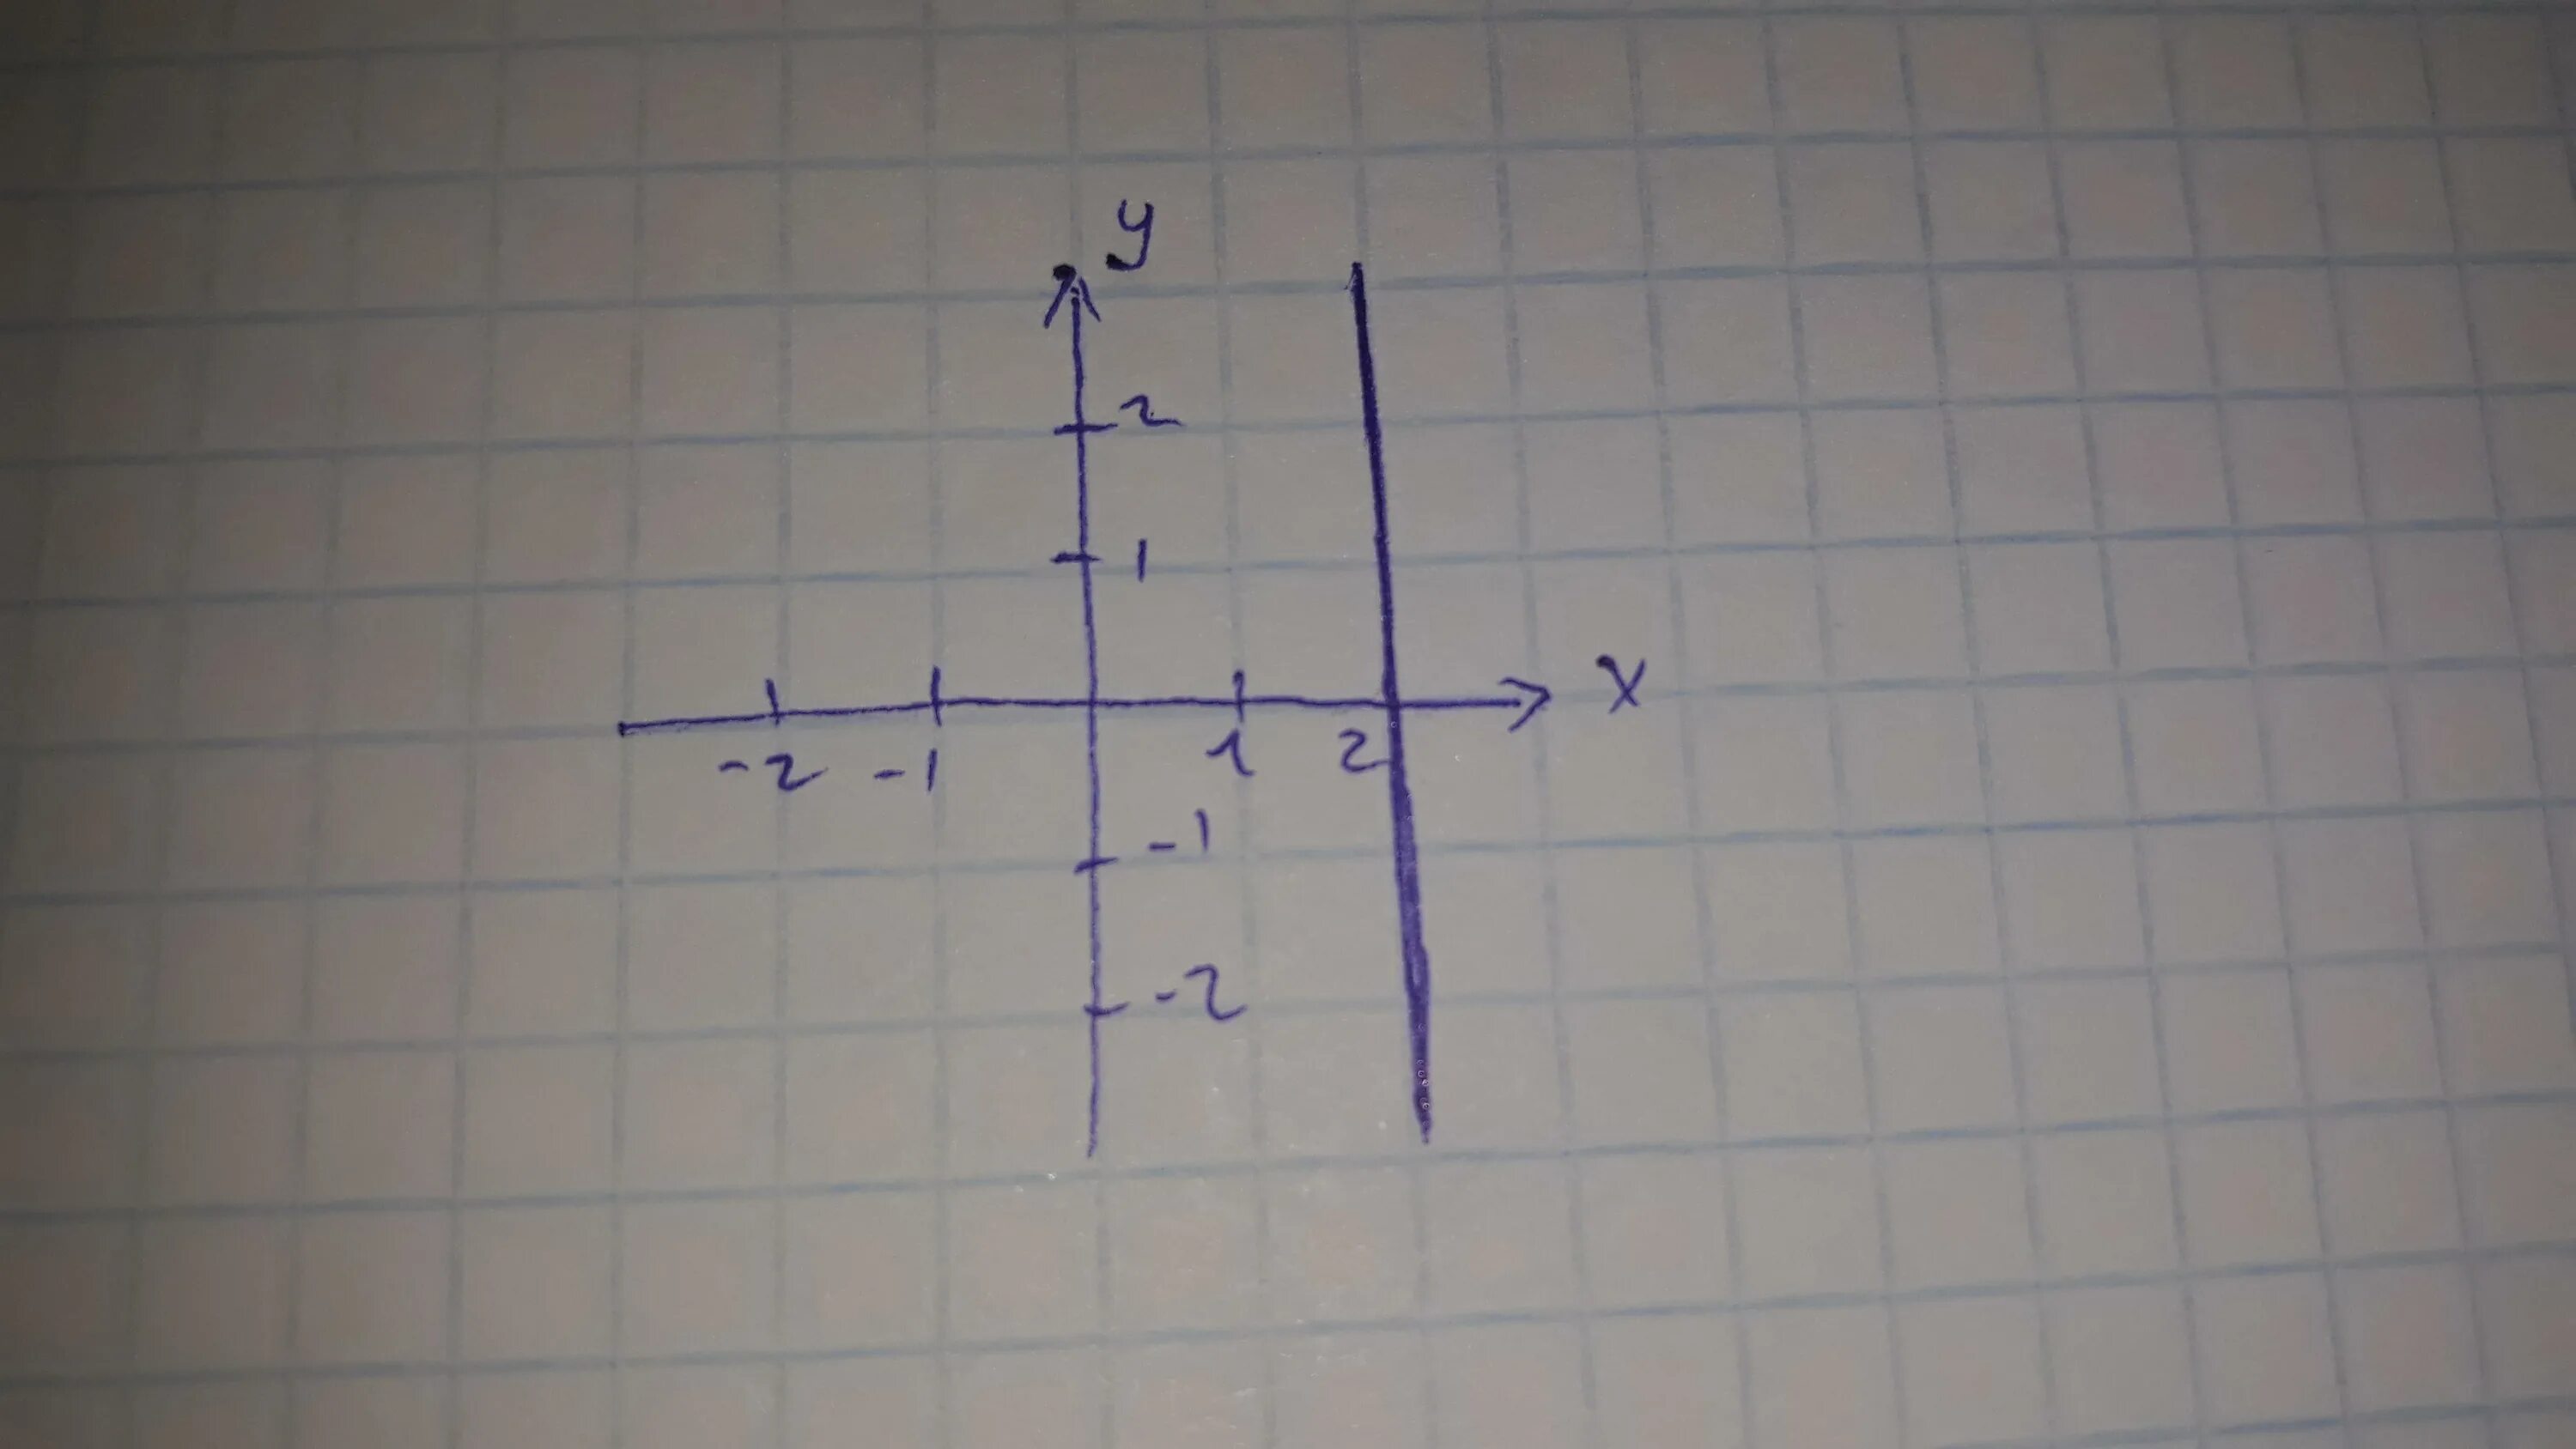 1 3 игрек равно 12. Изобразить на координатной плоскости. Изобразить на координатной плоскости ( x-2y) (x-7). Изобрази на координатной плоскости точки. Изобразите на координатной плоскости точки.